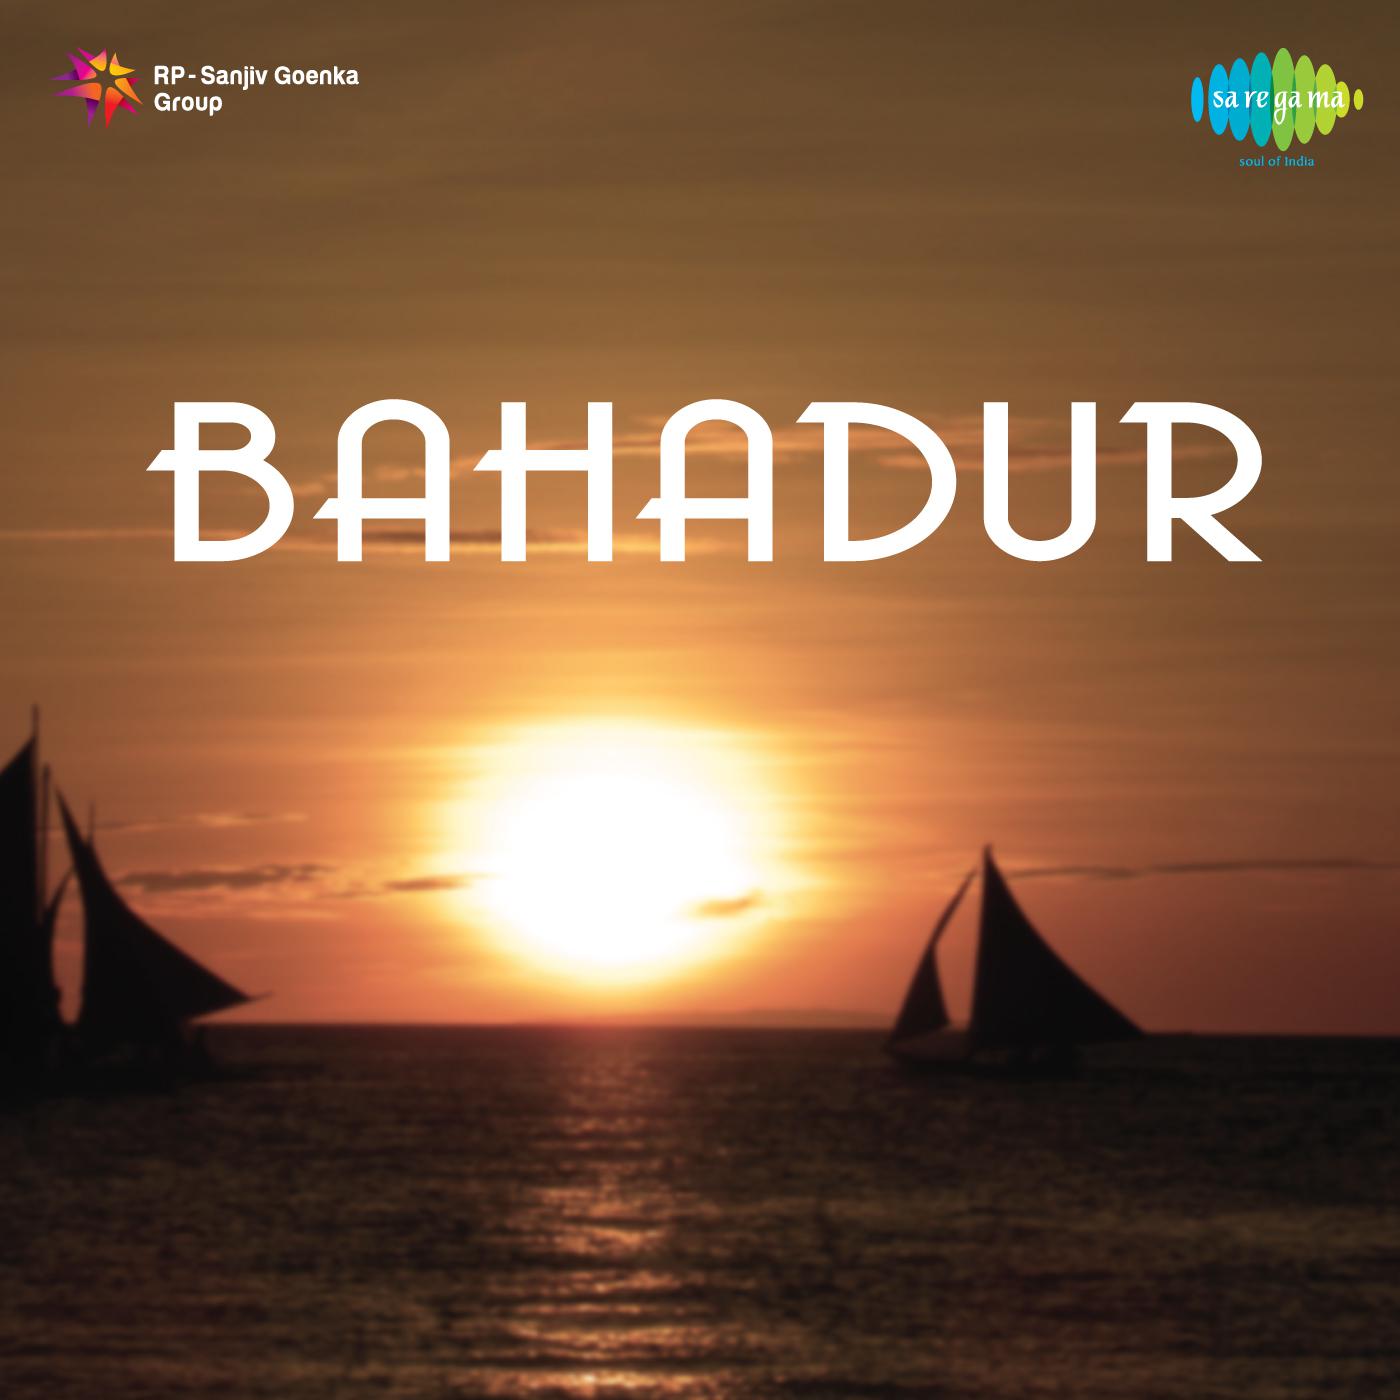 Bahadur